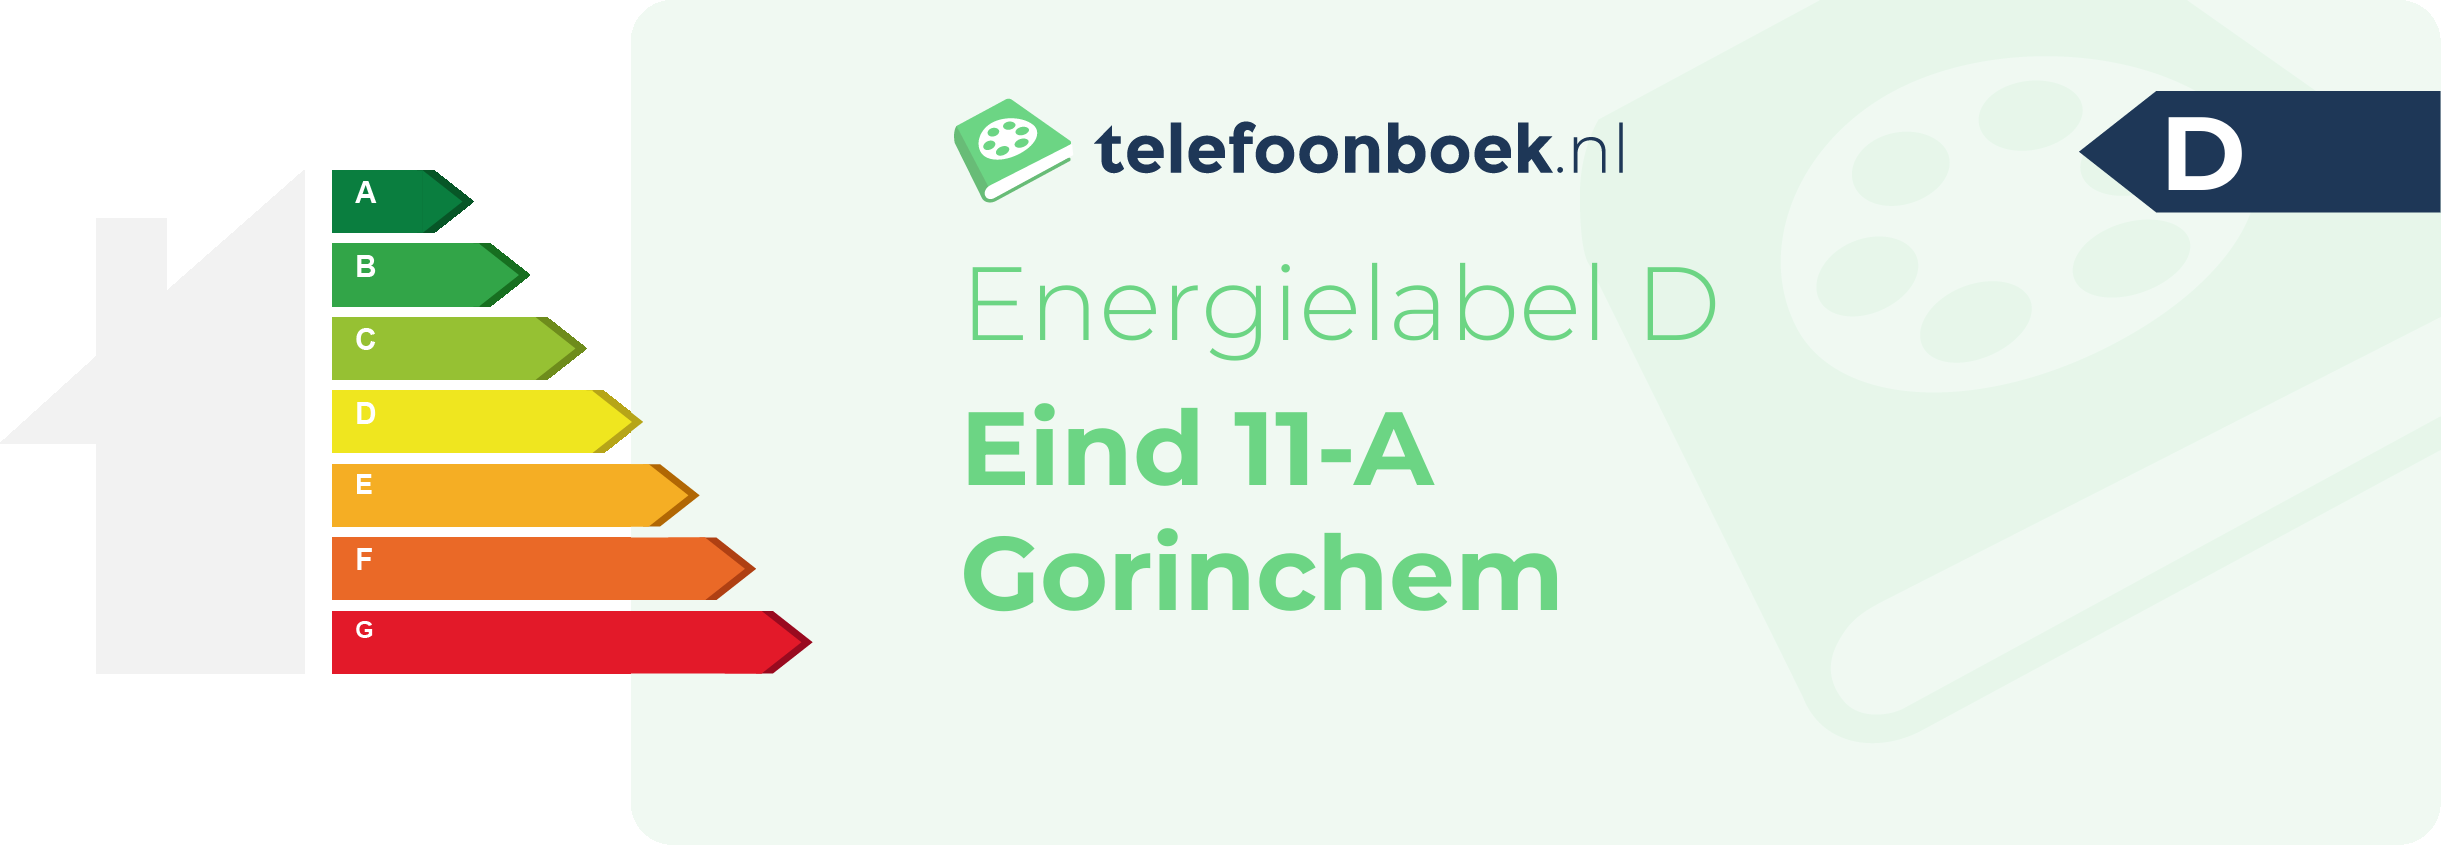 Energielabel Eind 11-A Gorinchem